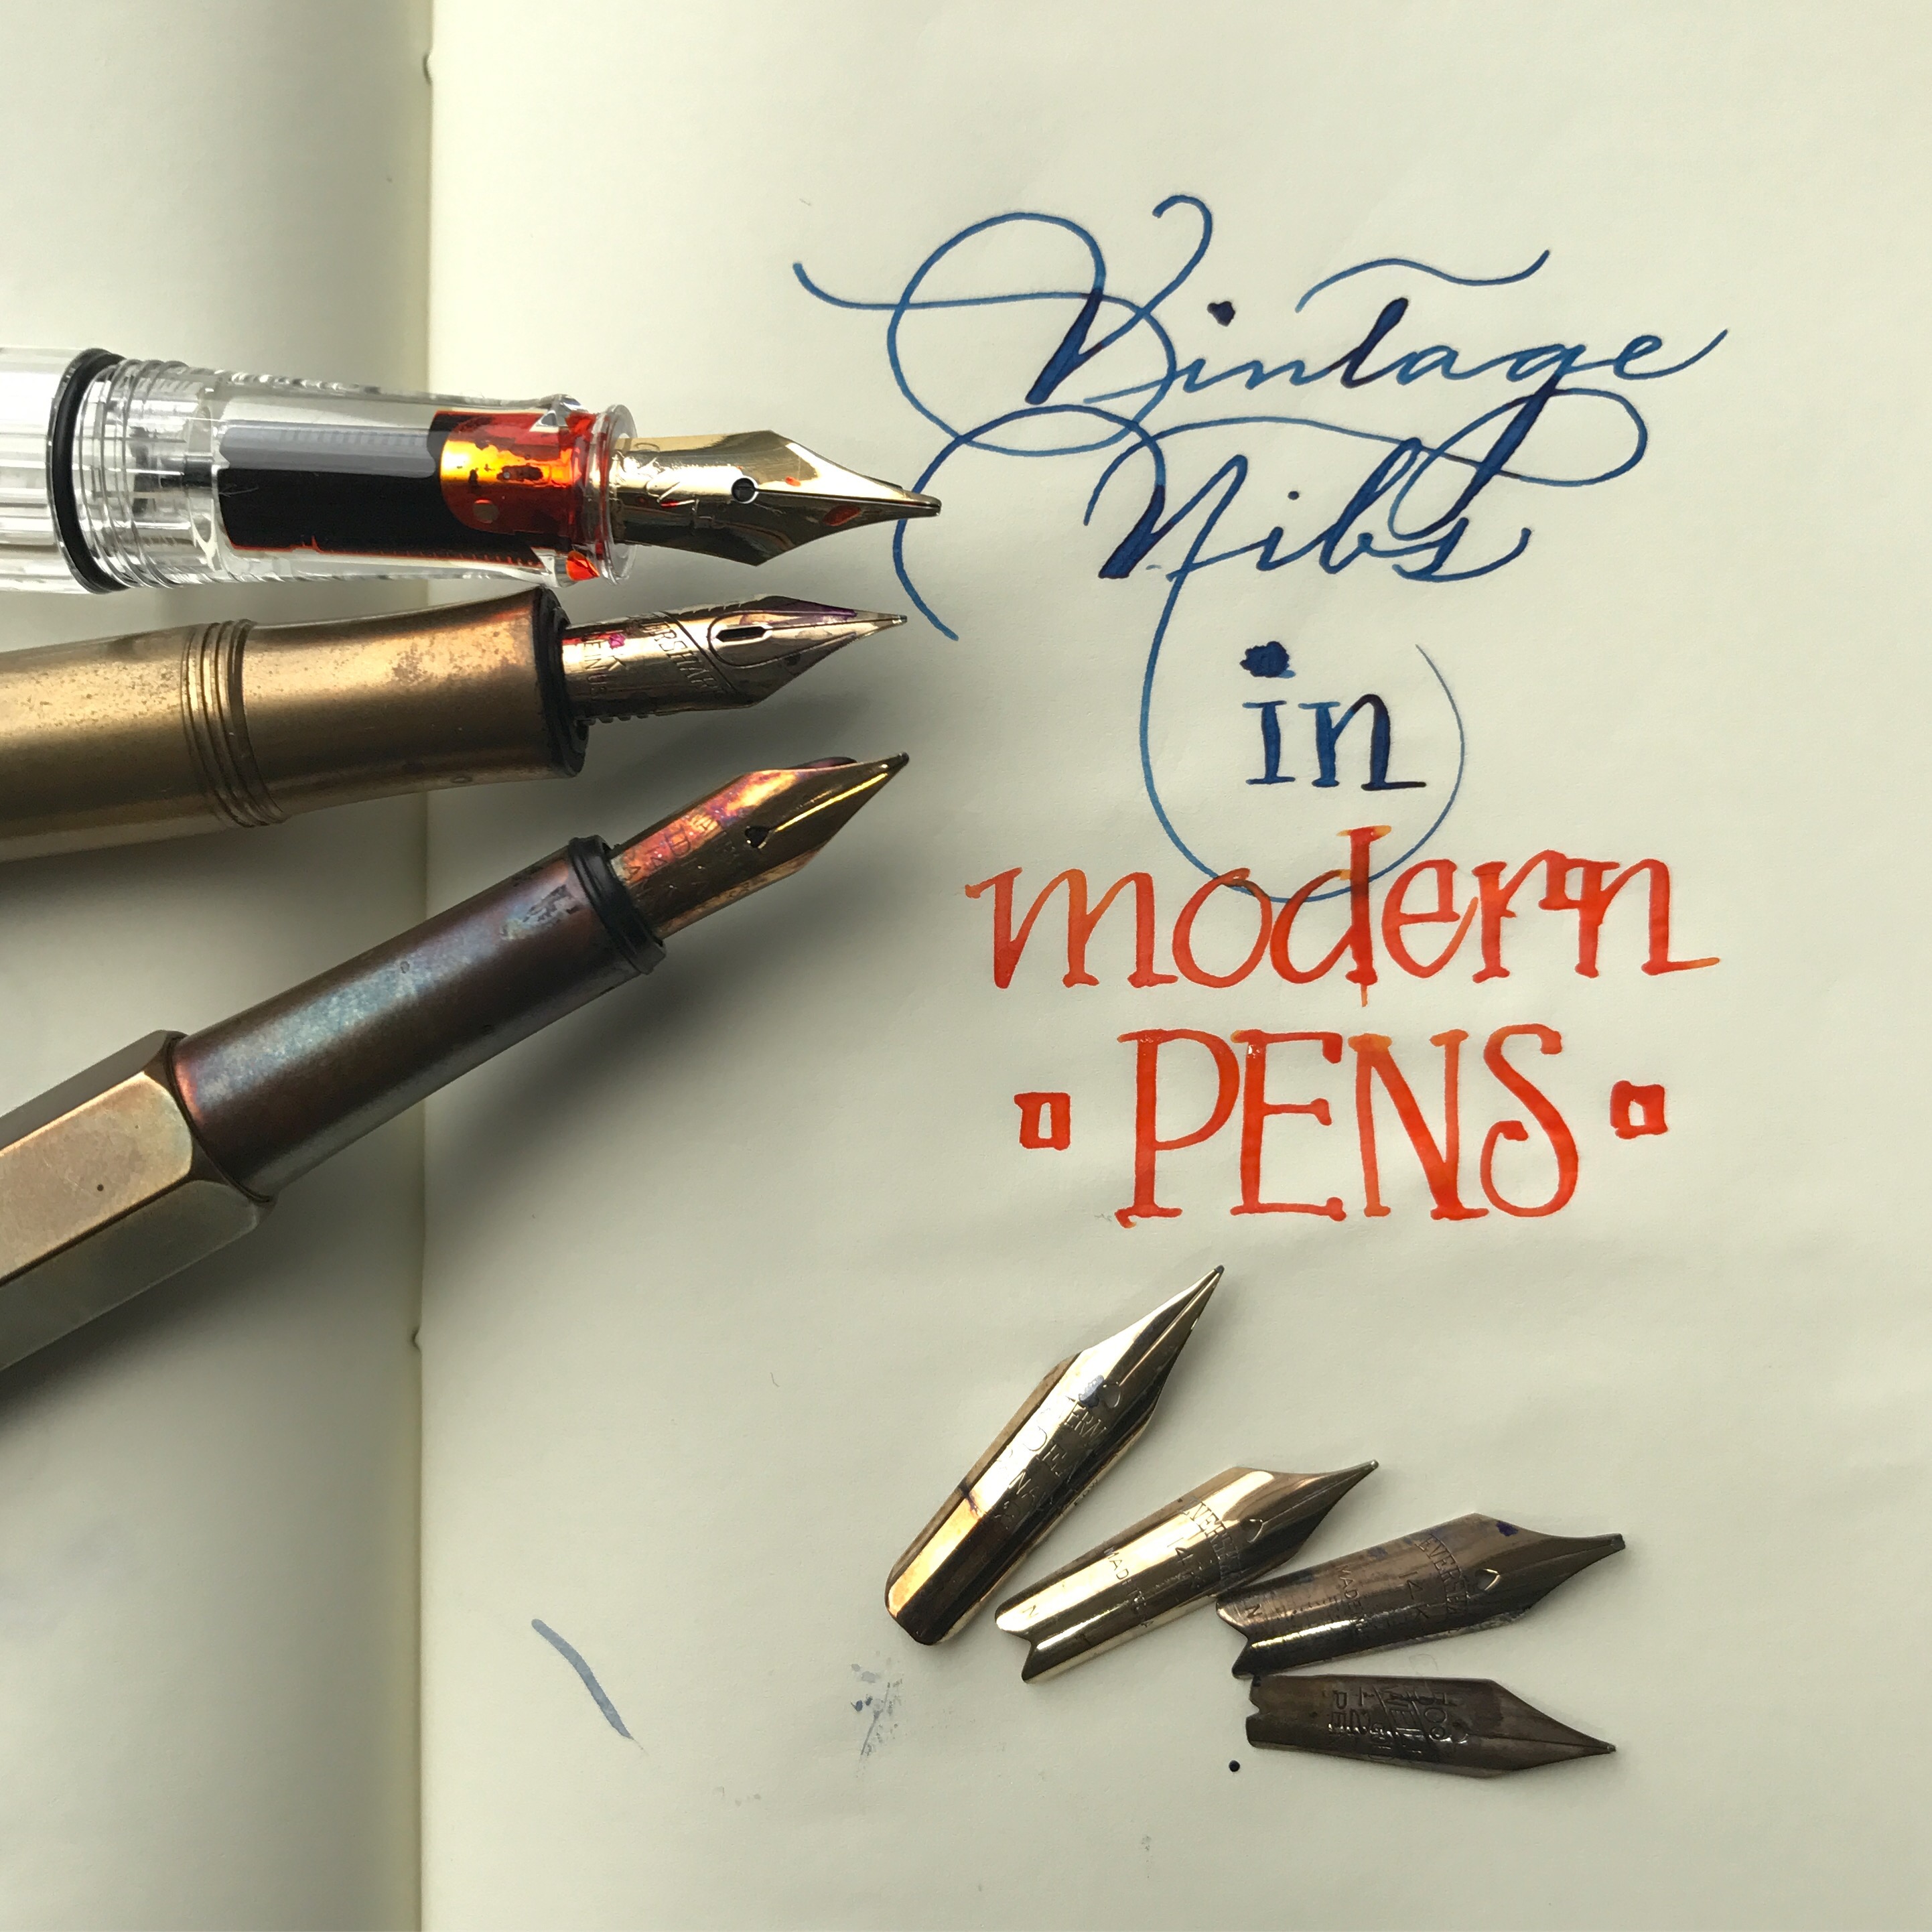 Vintage nibs in modern pens 